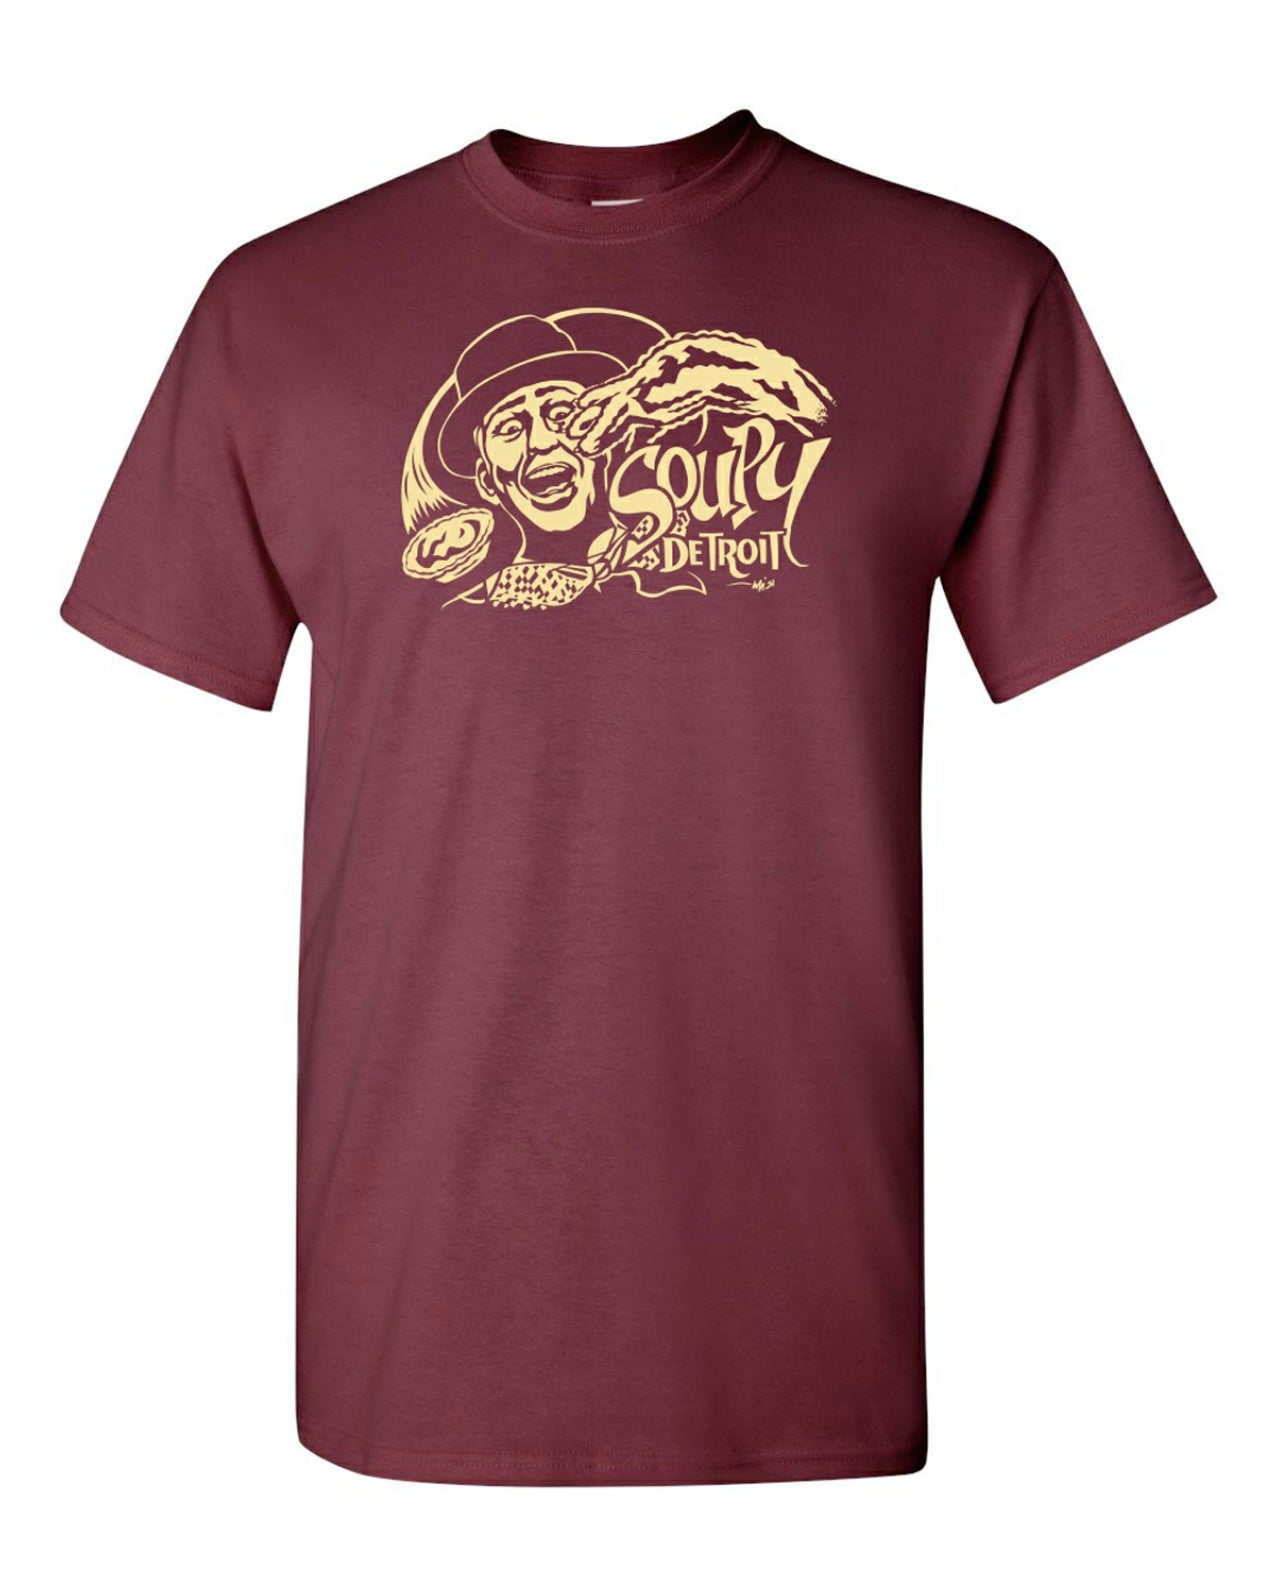 Soupy Sales T-Shirt